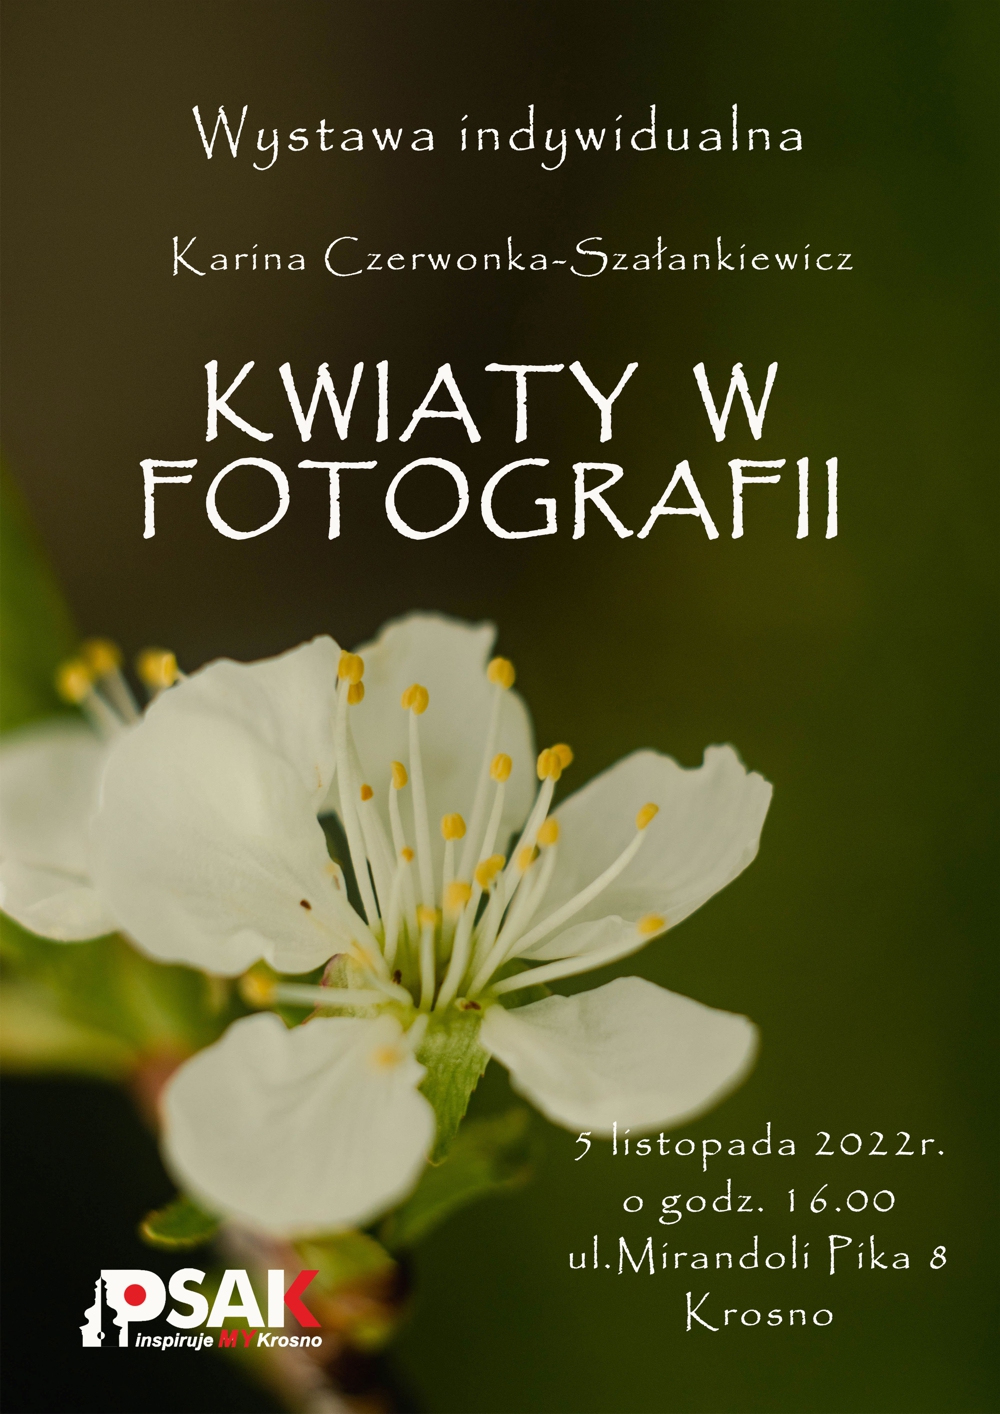 Plakat informujący o wystawie fotograficznej Kariny Czerwonki-Szałankiewicz pod tytułem Kwiaty w fotografii. Biały kwiat jabłoni na zielonym tle.